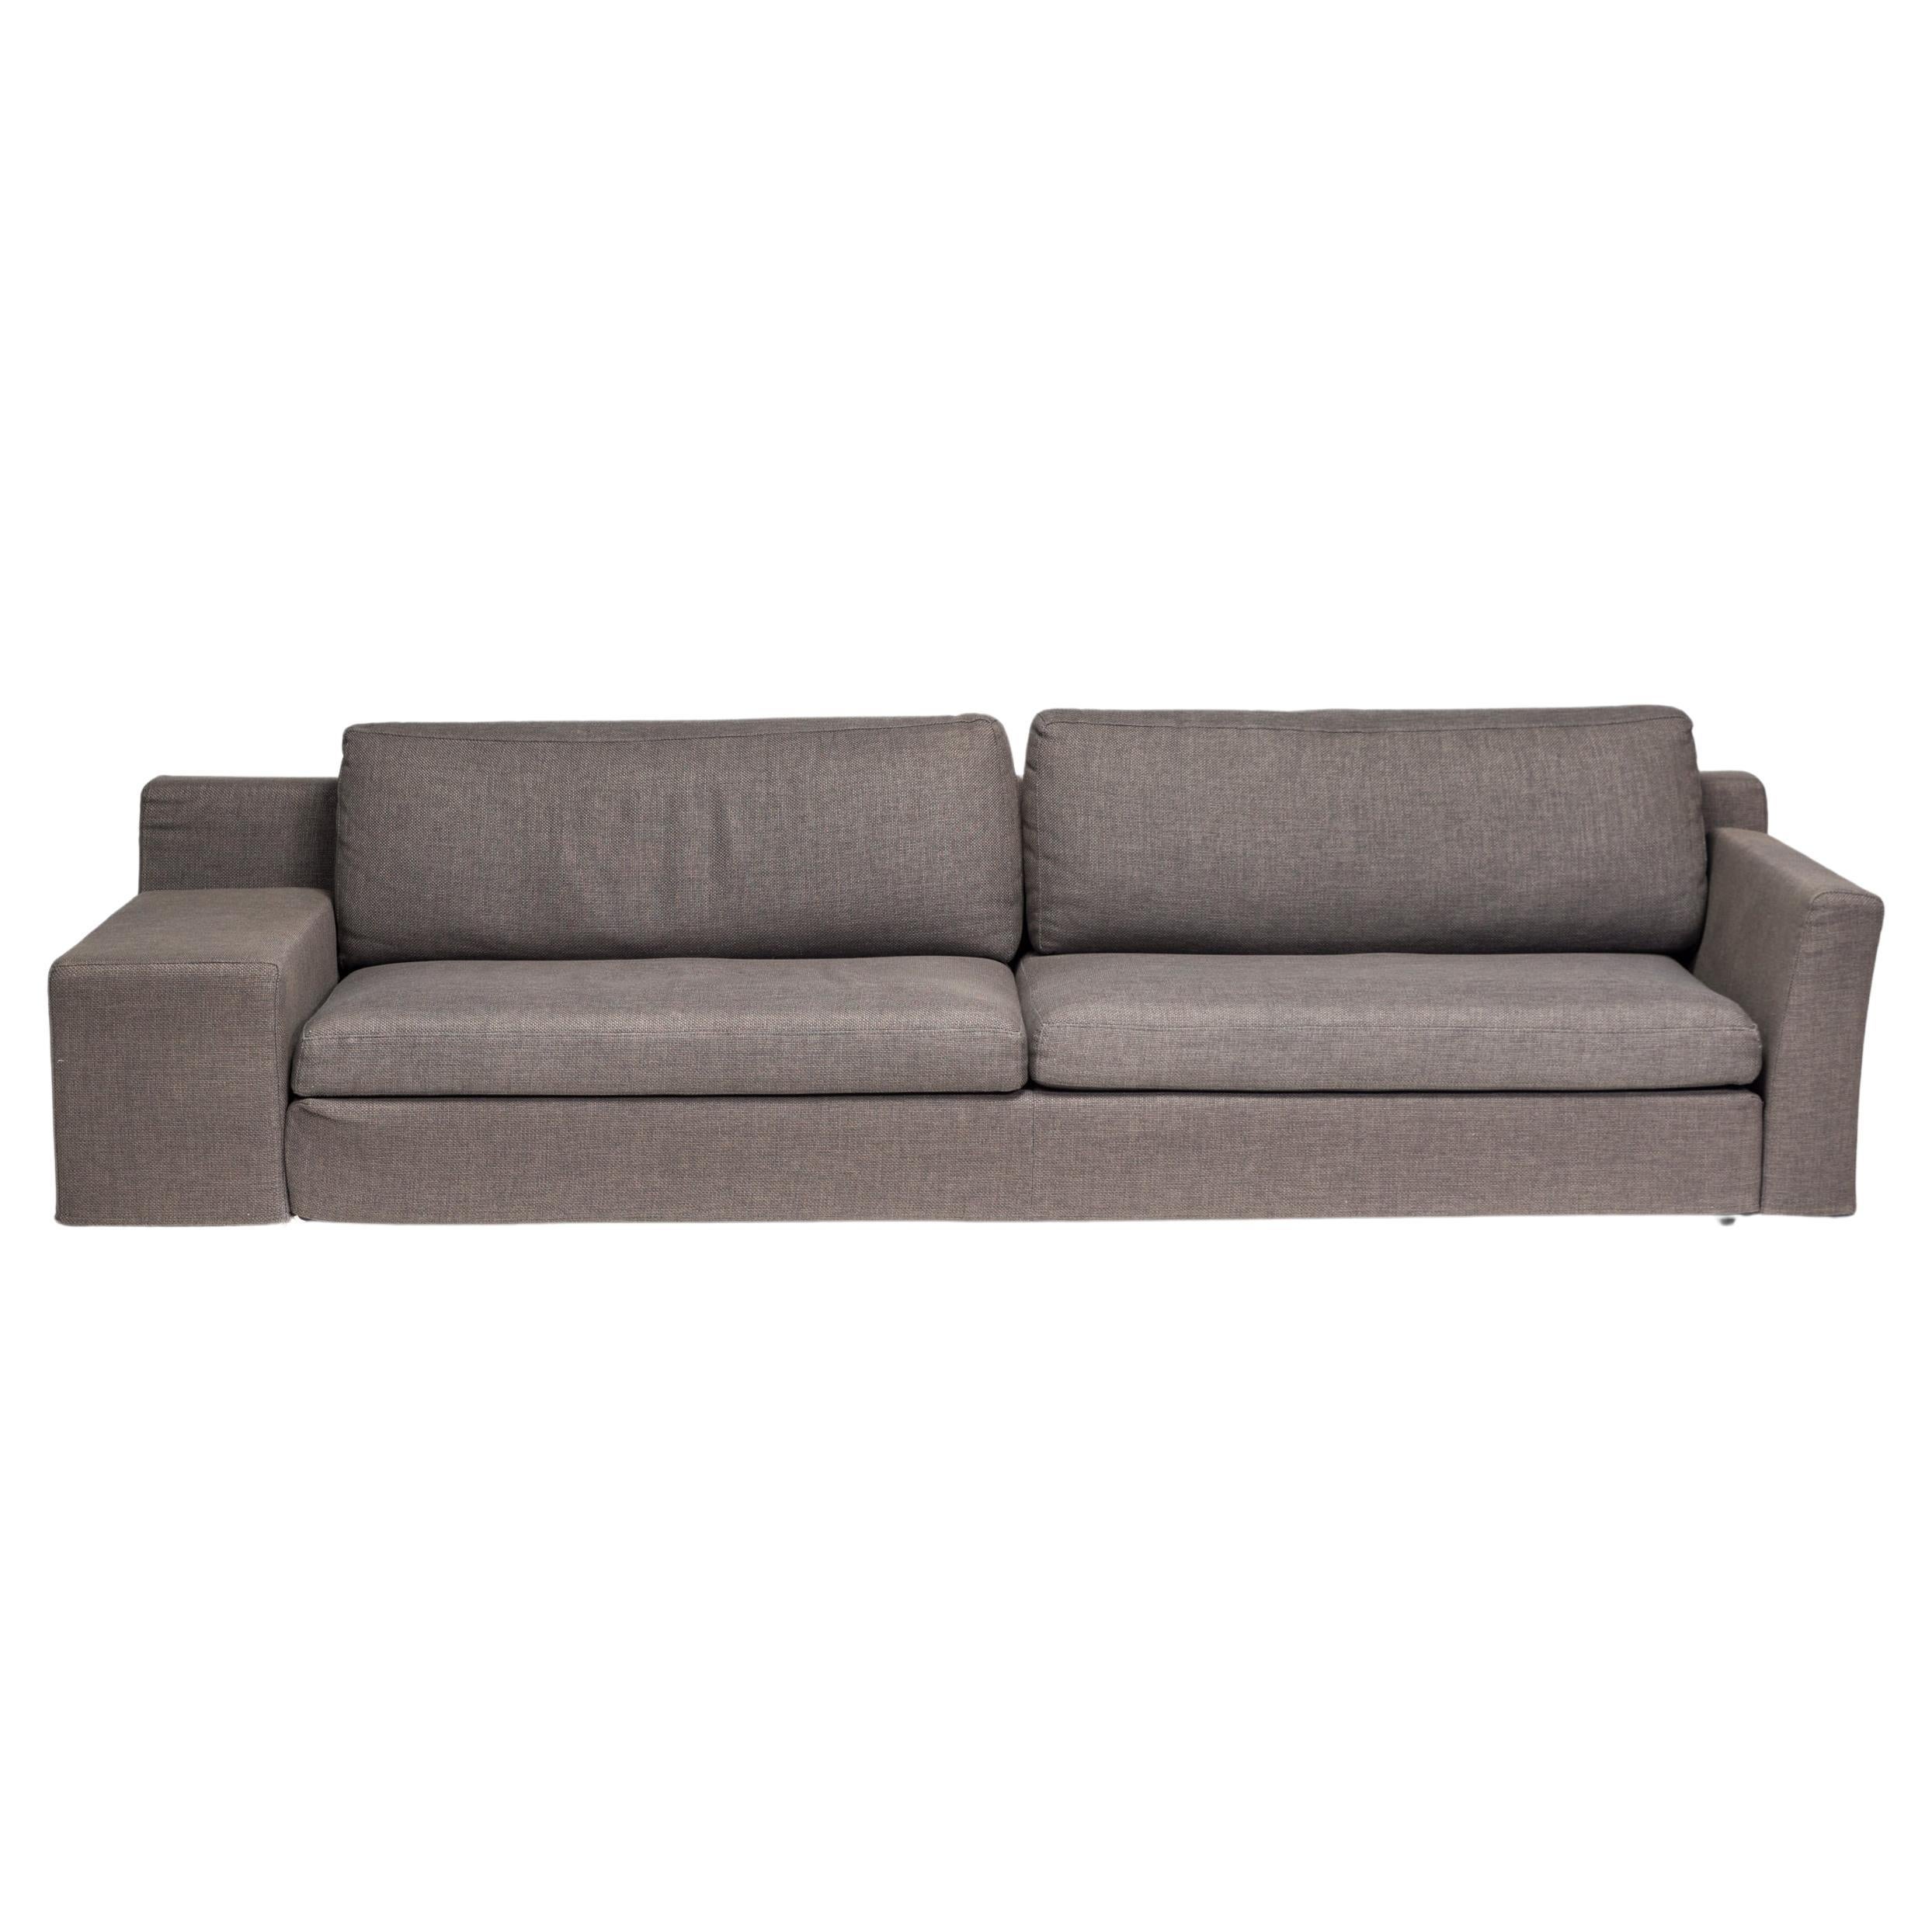 Fantastique exemple de design contemporain, ce canapé Mister est conçu par Philippe Starck pour Cassina.

Le canapé est doté d'un dossier bas et d'une assise profonde, entièrement rembourré en tissu tissé gris foncé.

Le canapé présente une